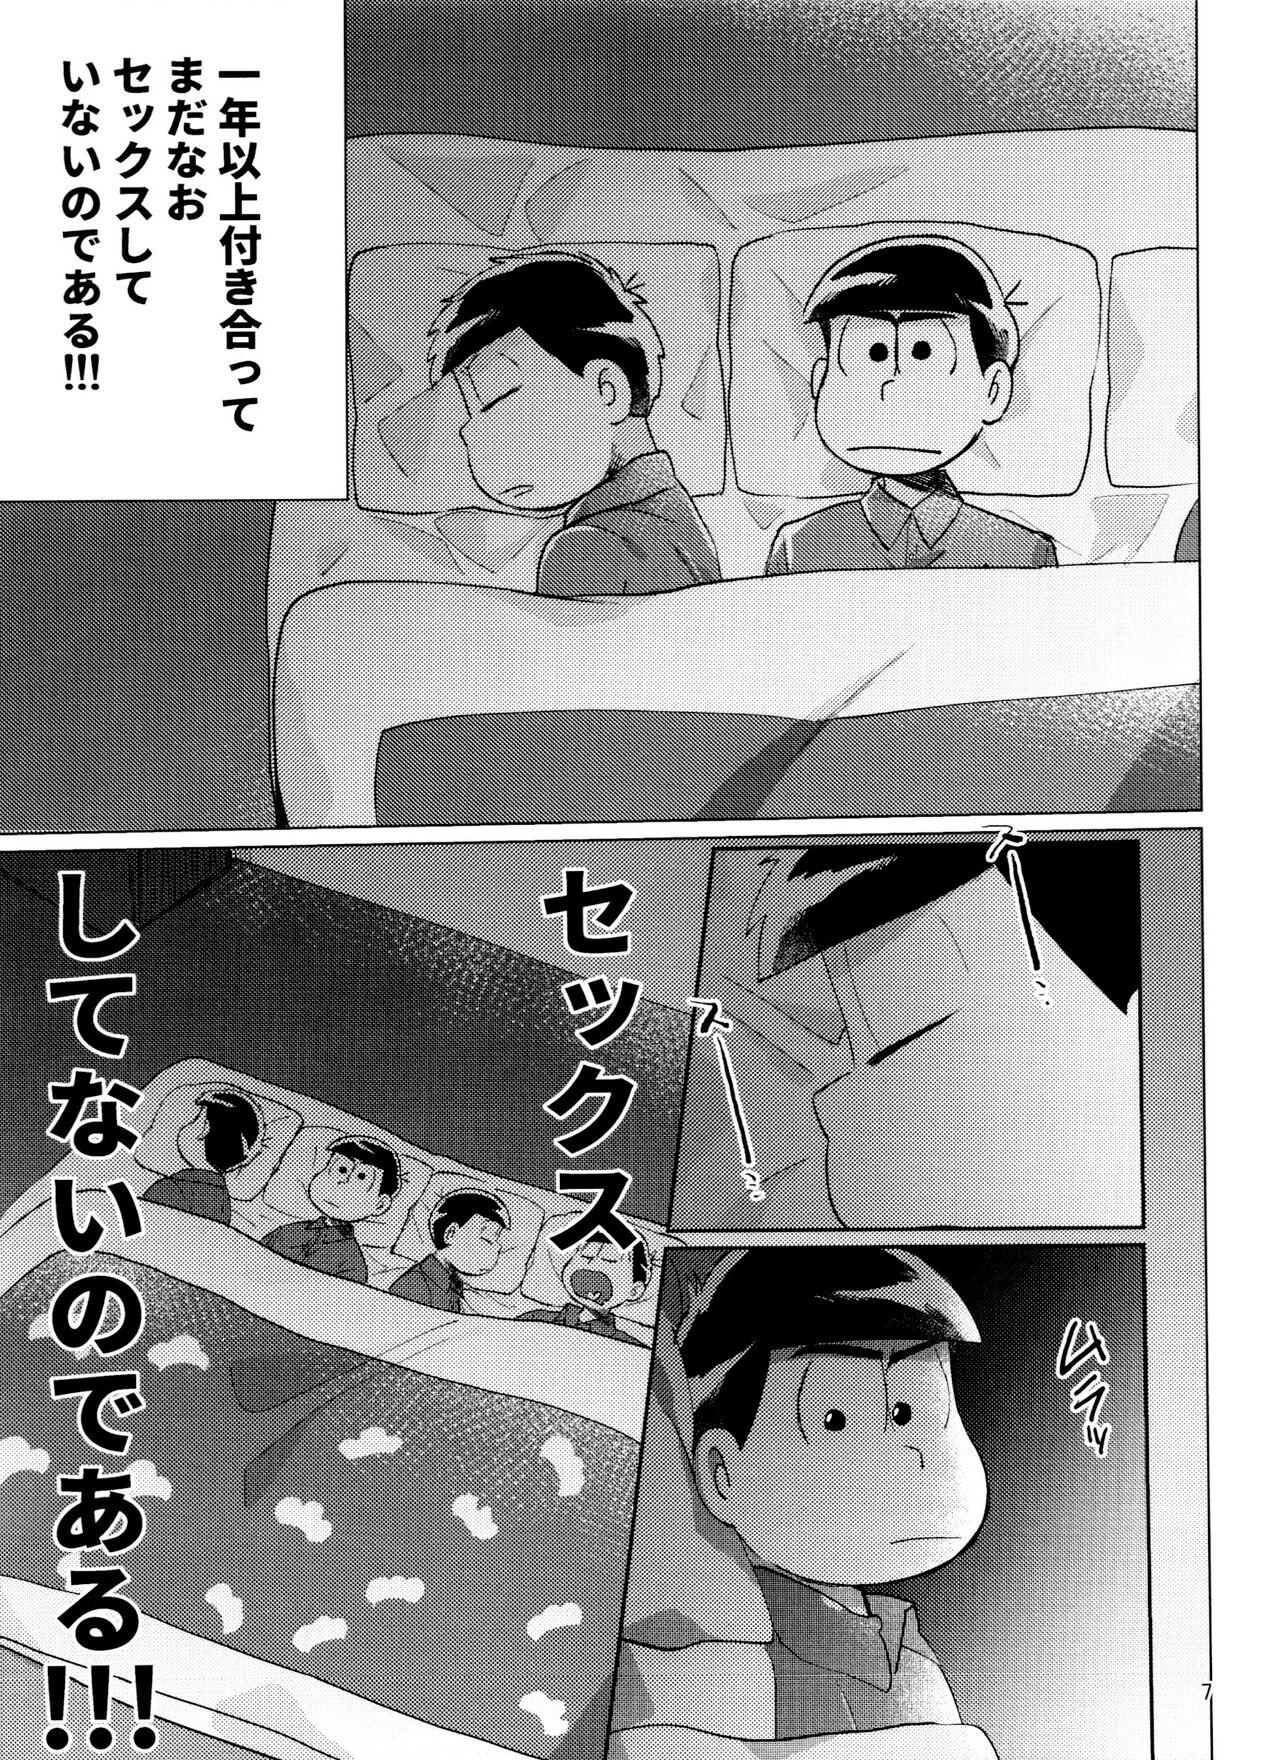 Pasivo Osomatsu-san Nekasete Kure, Burazaa!! - Osomatsu san Show - Page 7